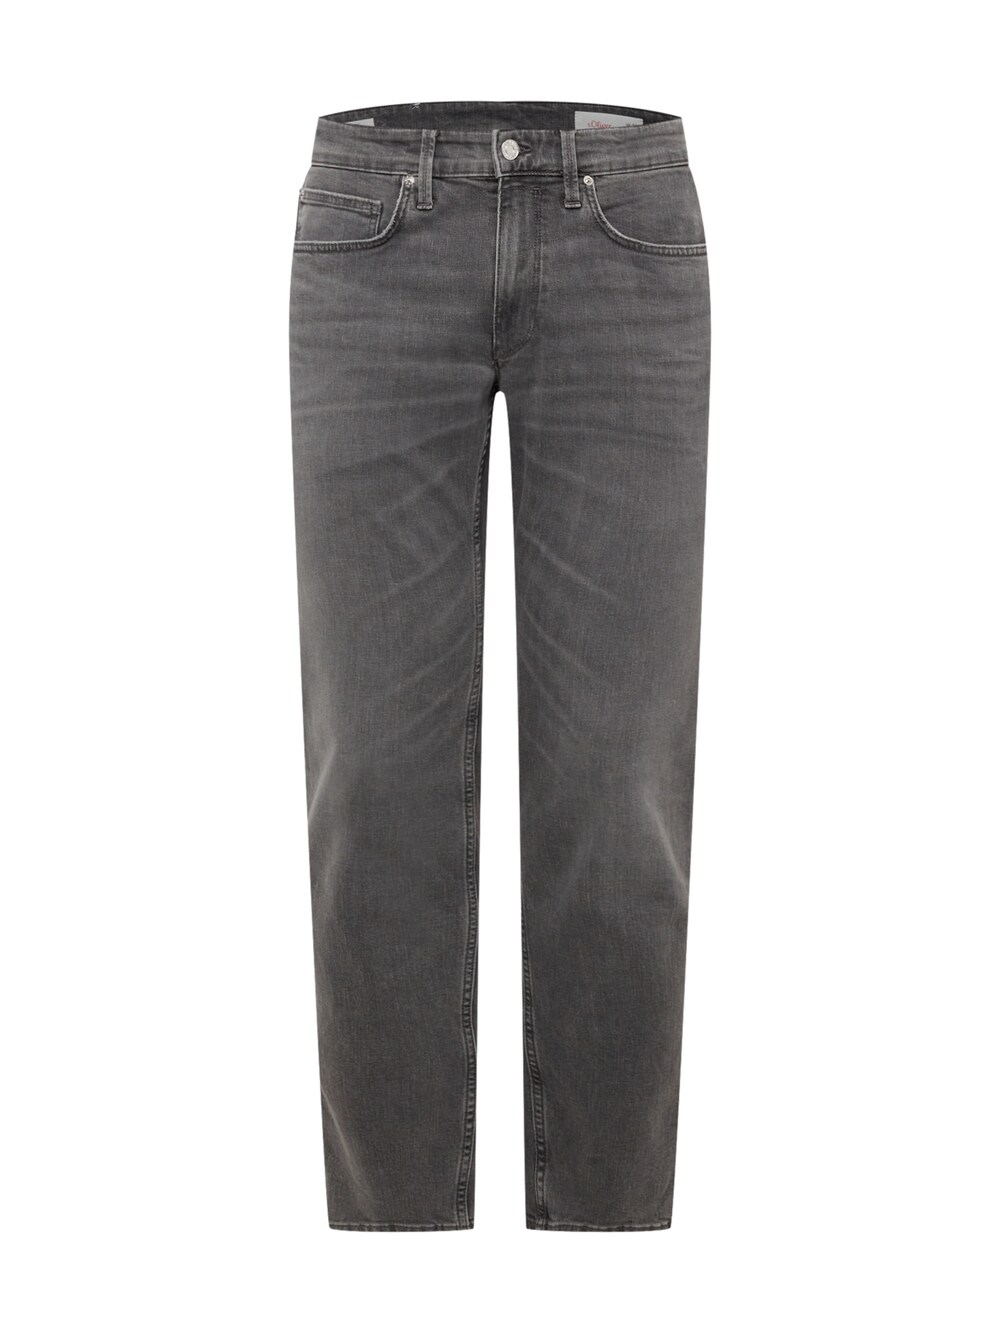 Обычные джинсы S.Oliver, серый